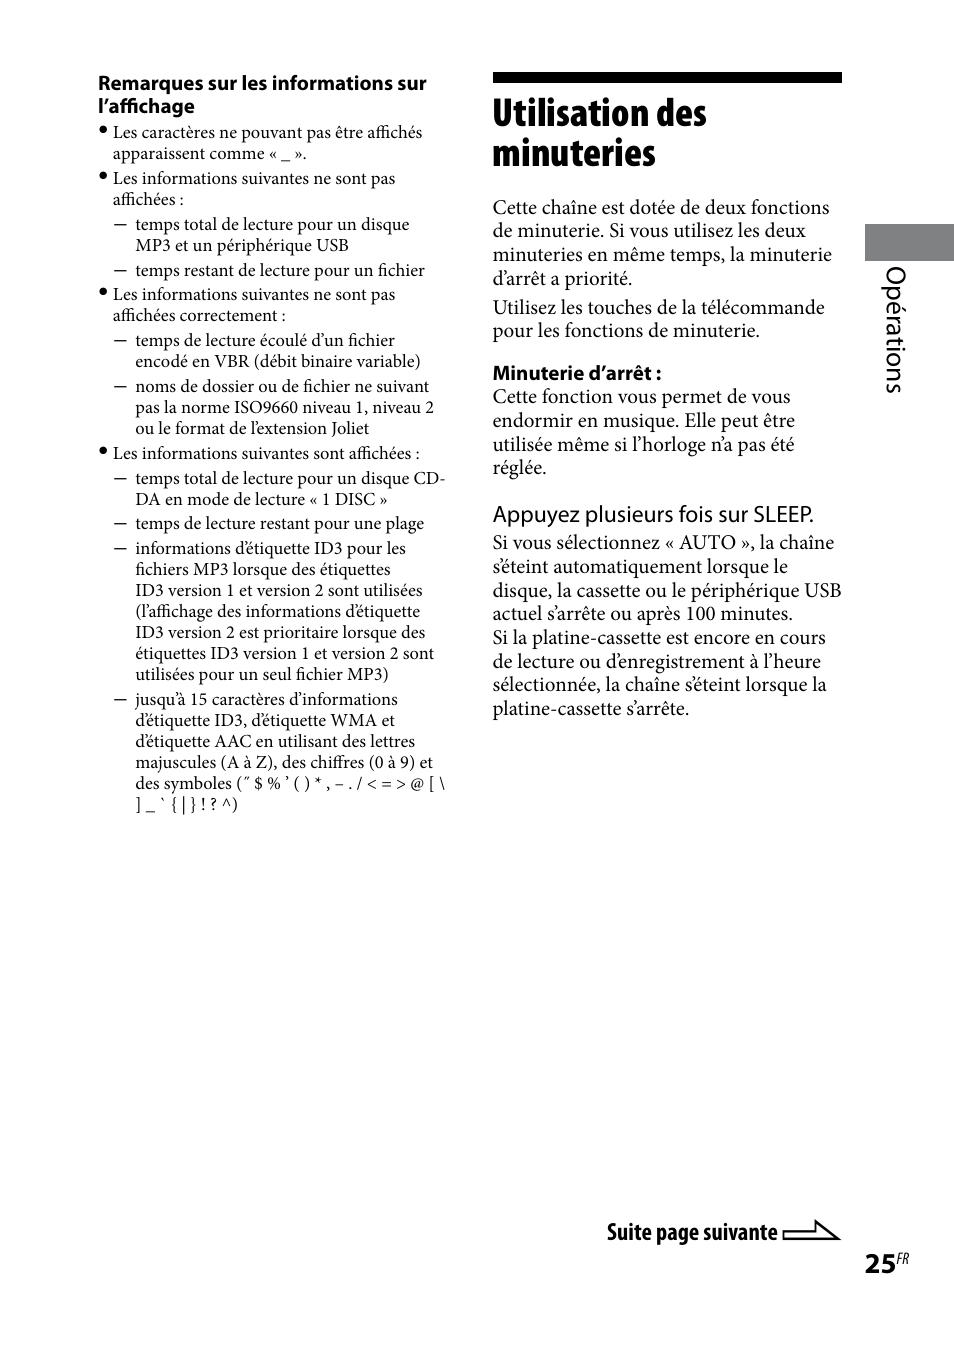 Utilisation des minuteries, Opér ations | Sony MHC-EC69 Manuel d'utilisation | Page 25 / 44